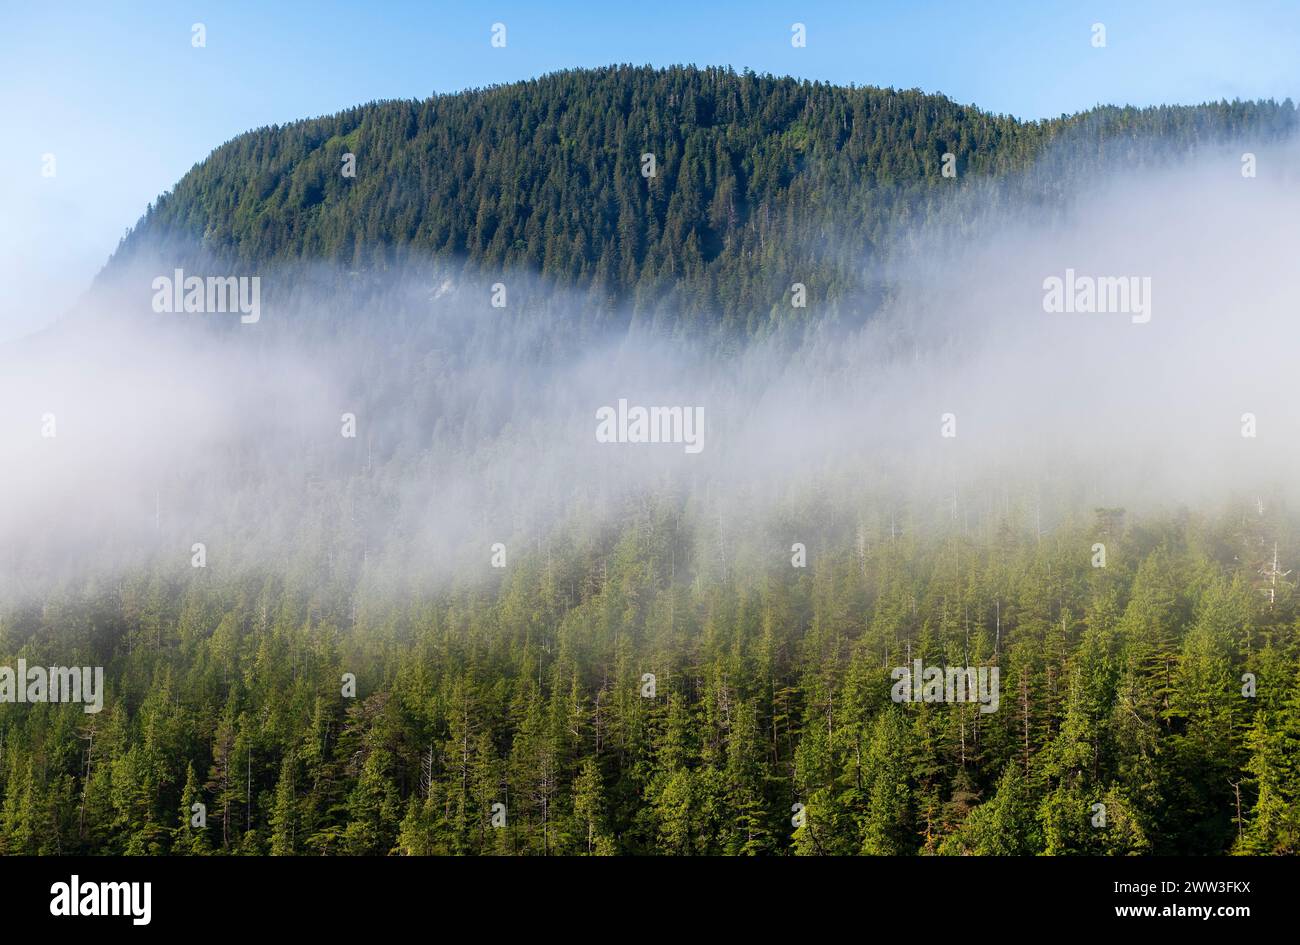 Forêt de pins et de cèdres dans le brouillard, croisière Inside passage entre Prince Rupert et Port Hardy, île de Vancouver, Colombie-Britannique, Canada. Banque D'Images